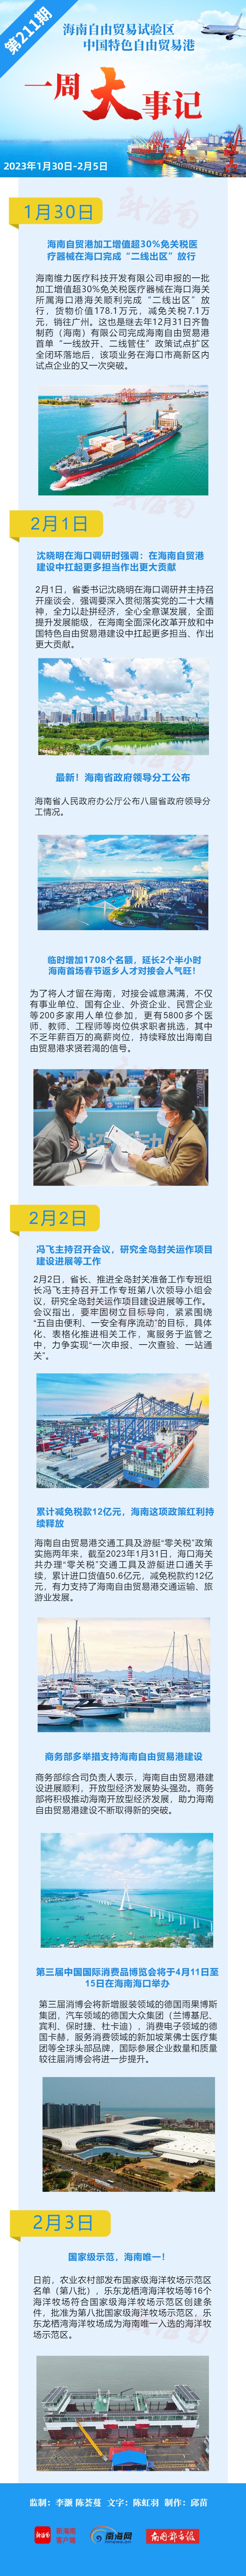 海南自贸港一周大事记 | 第三届中国国际消费品博览会将于4月11日至15日在海口举办